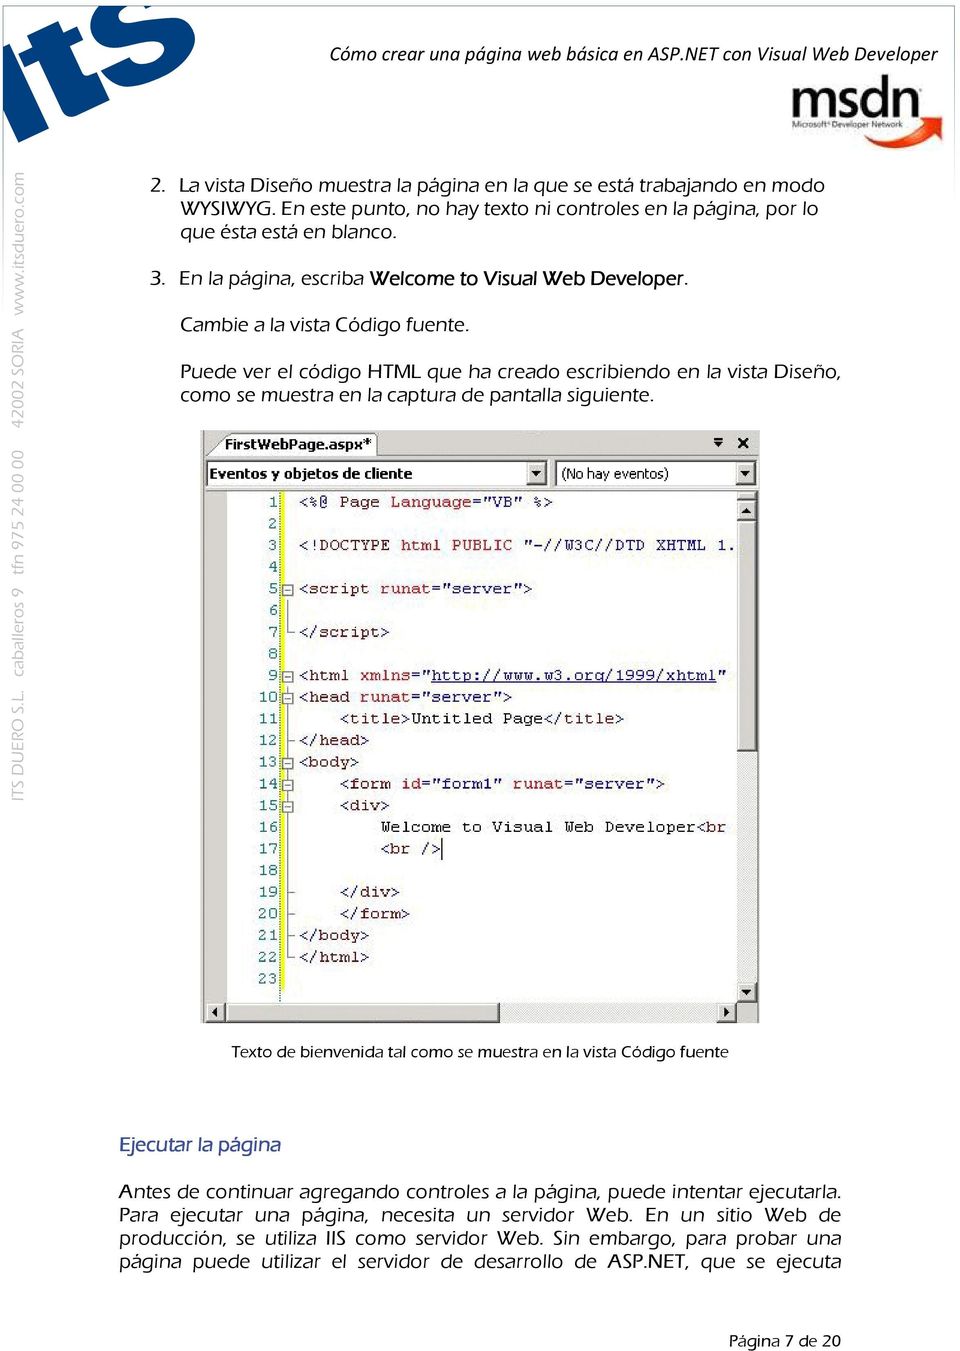 Puede ver el código HTML que ha creado escribiendo en la vista Diseño, como se muestra en la captura de pantalla siguiente.